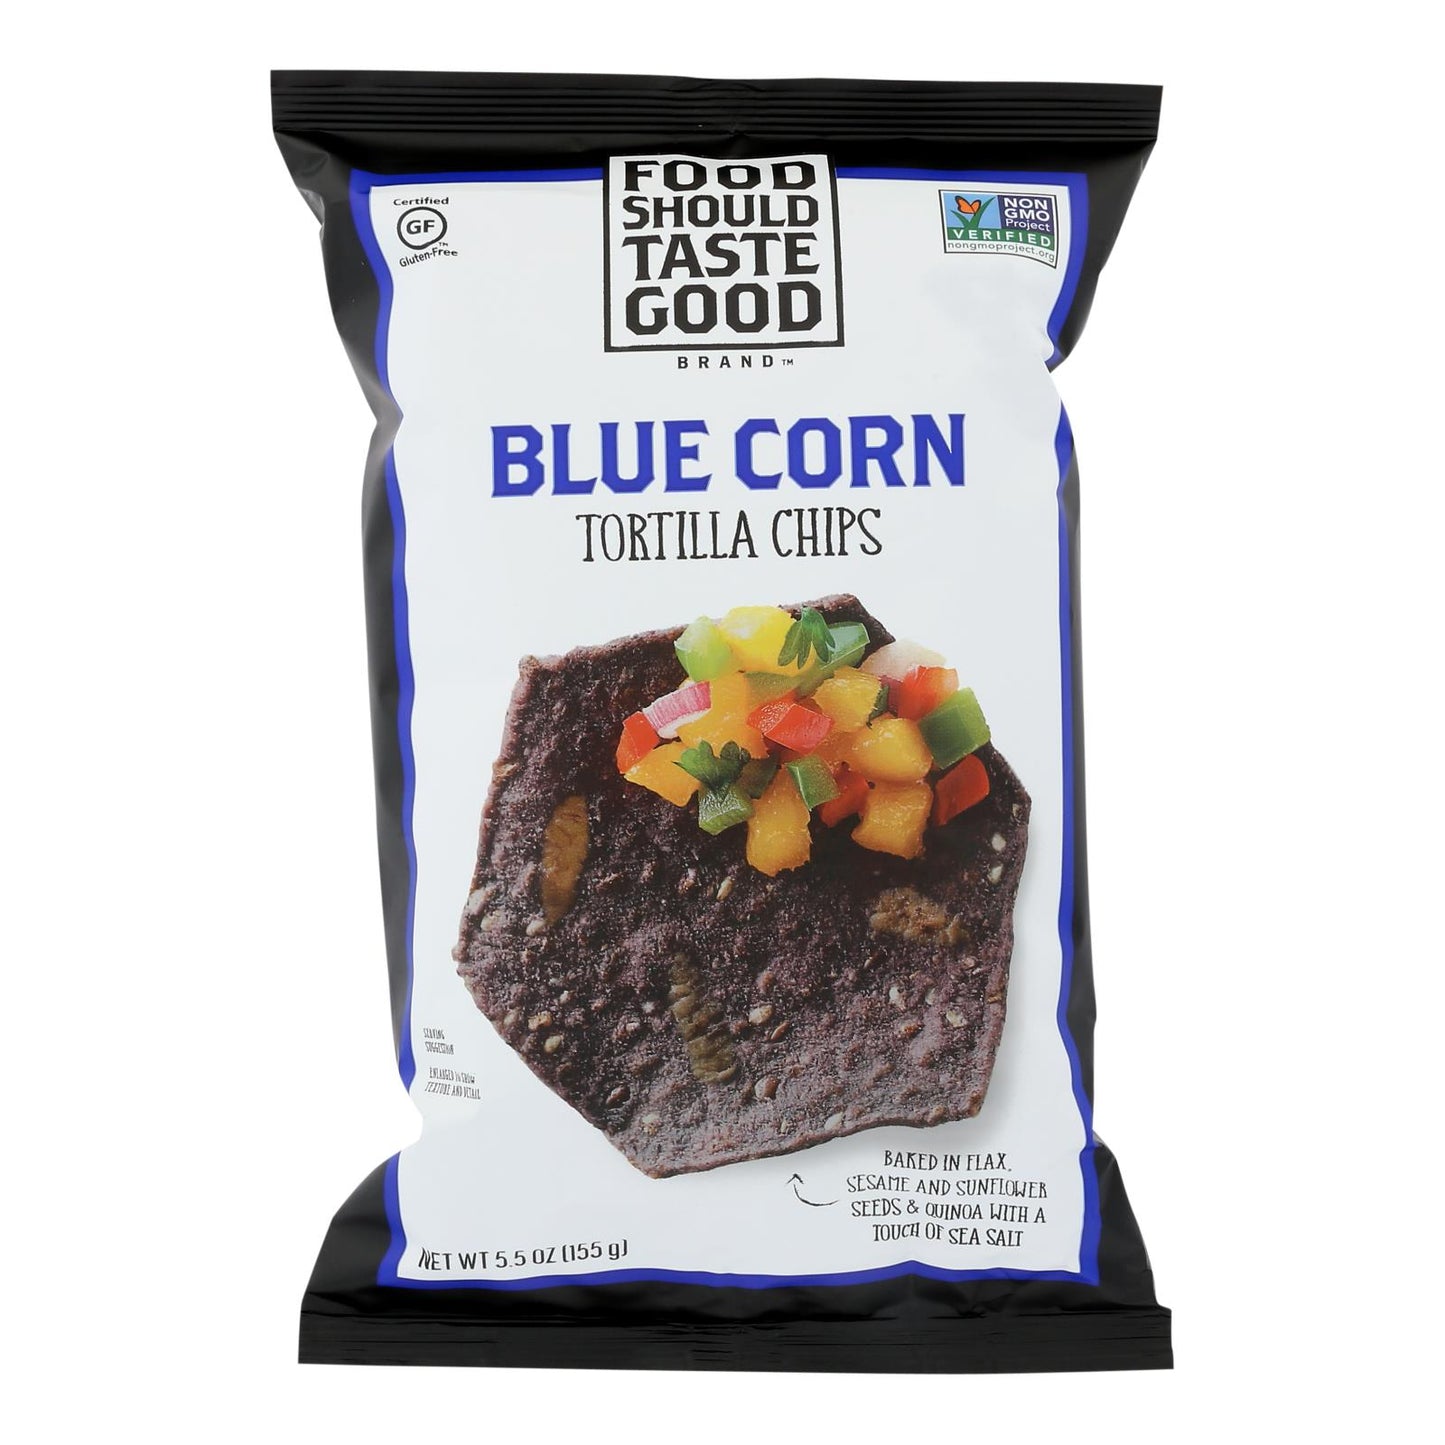 Food Should Taste Good Blue Corn Tortilla Chips - Blue Corn - Case Of 12 - 5.5 Oz.